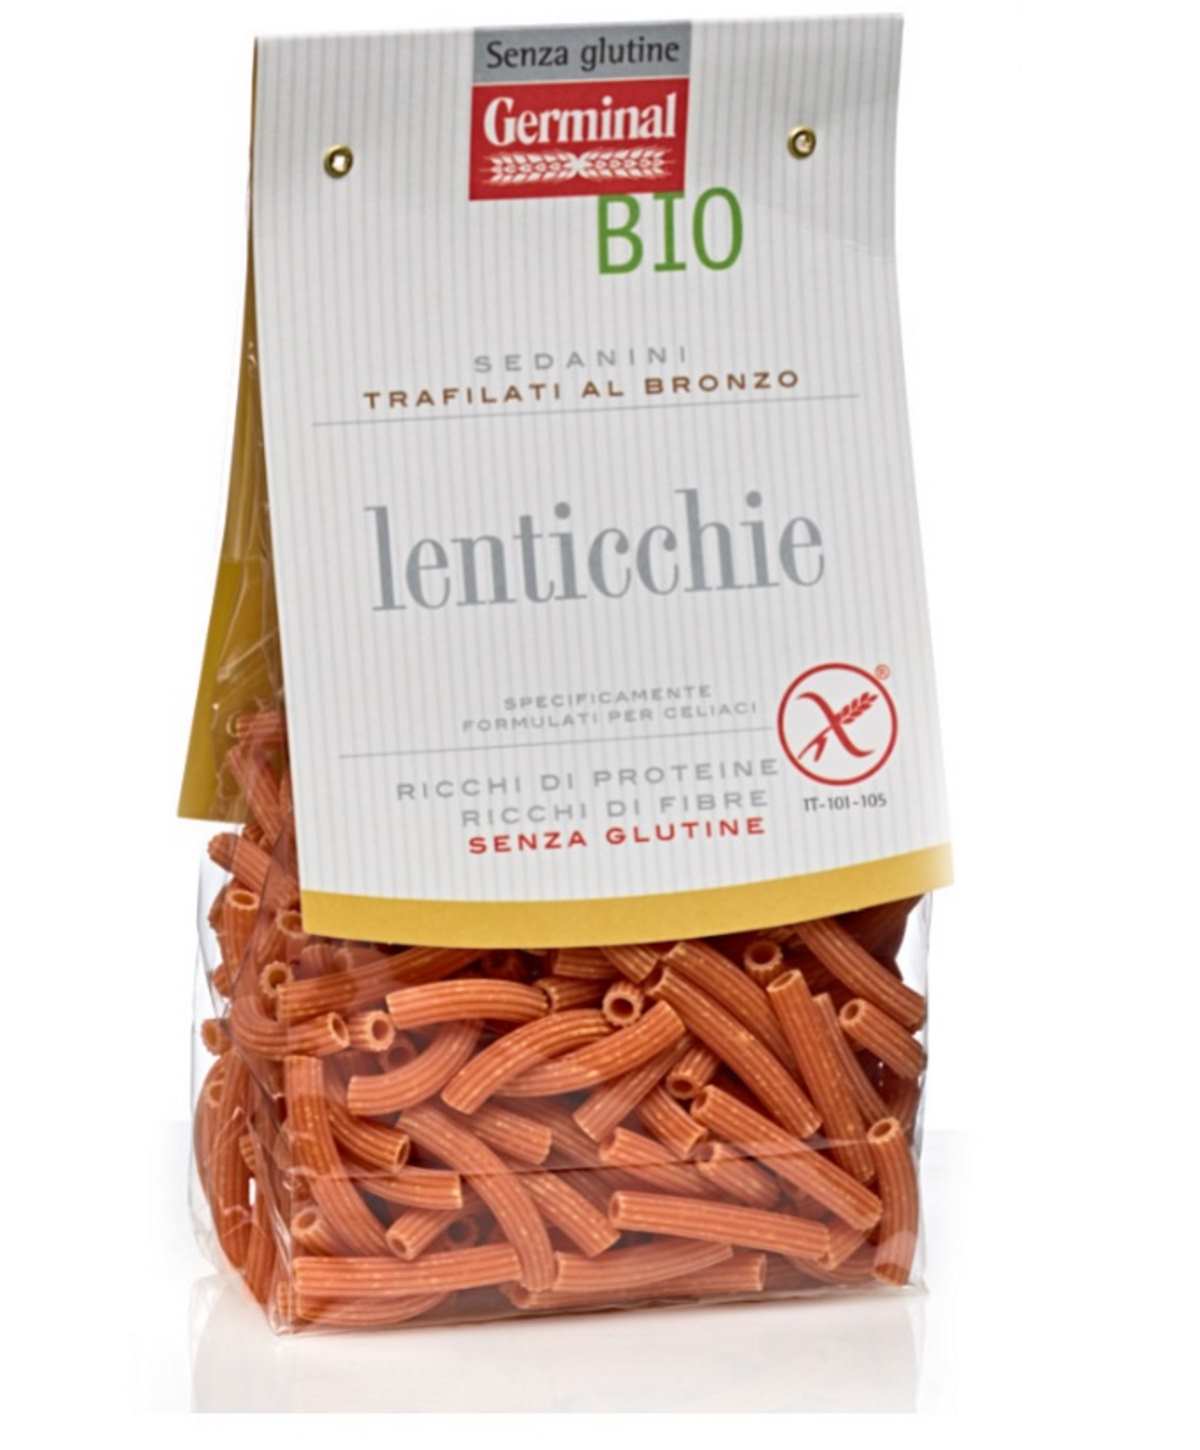 sedanini-lenticchie